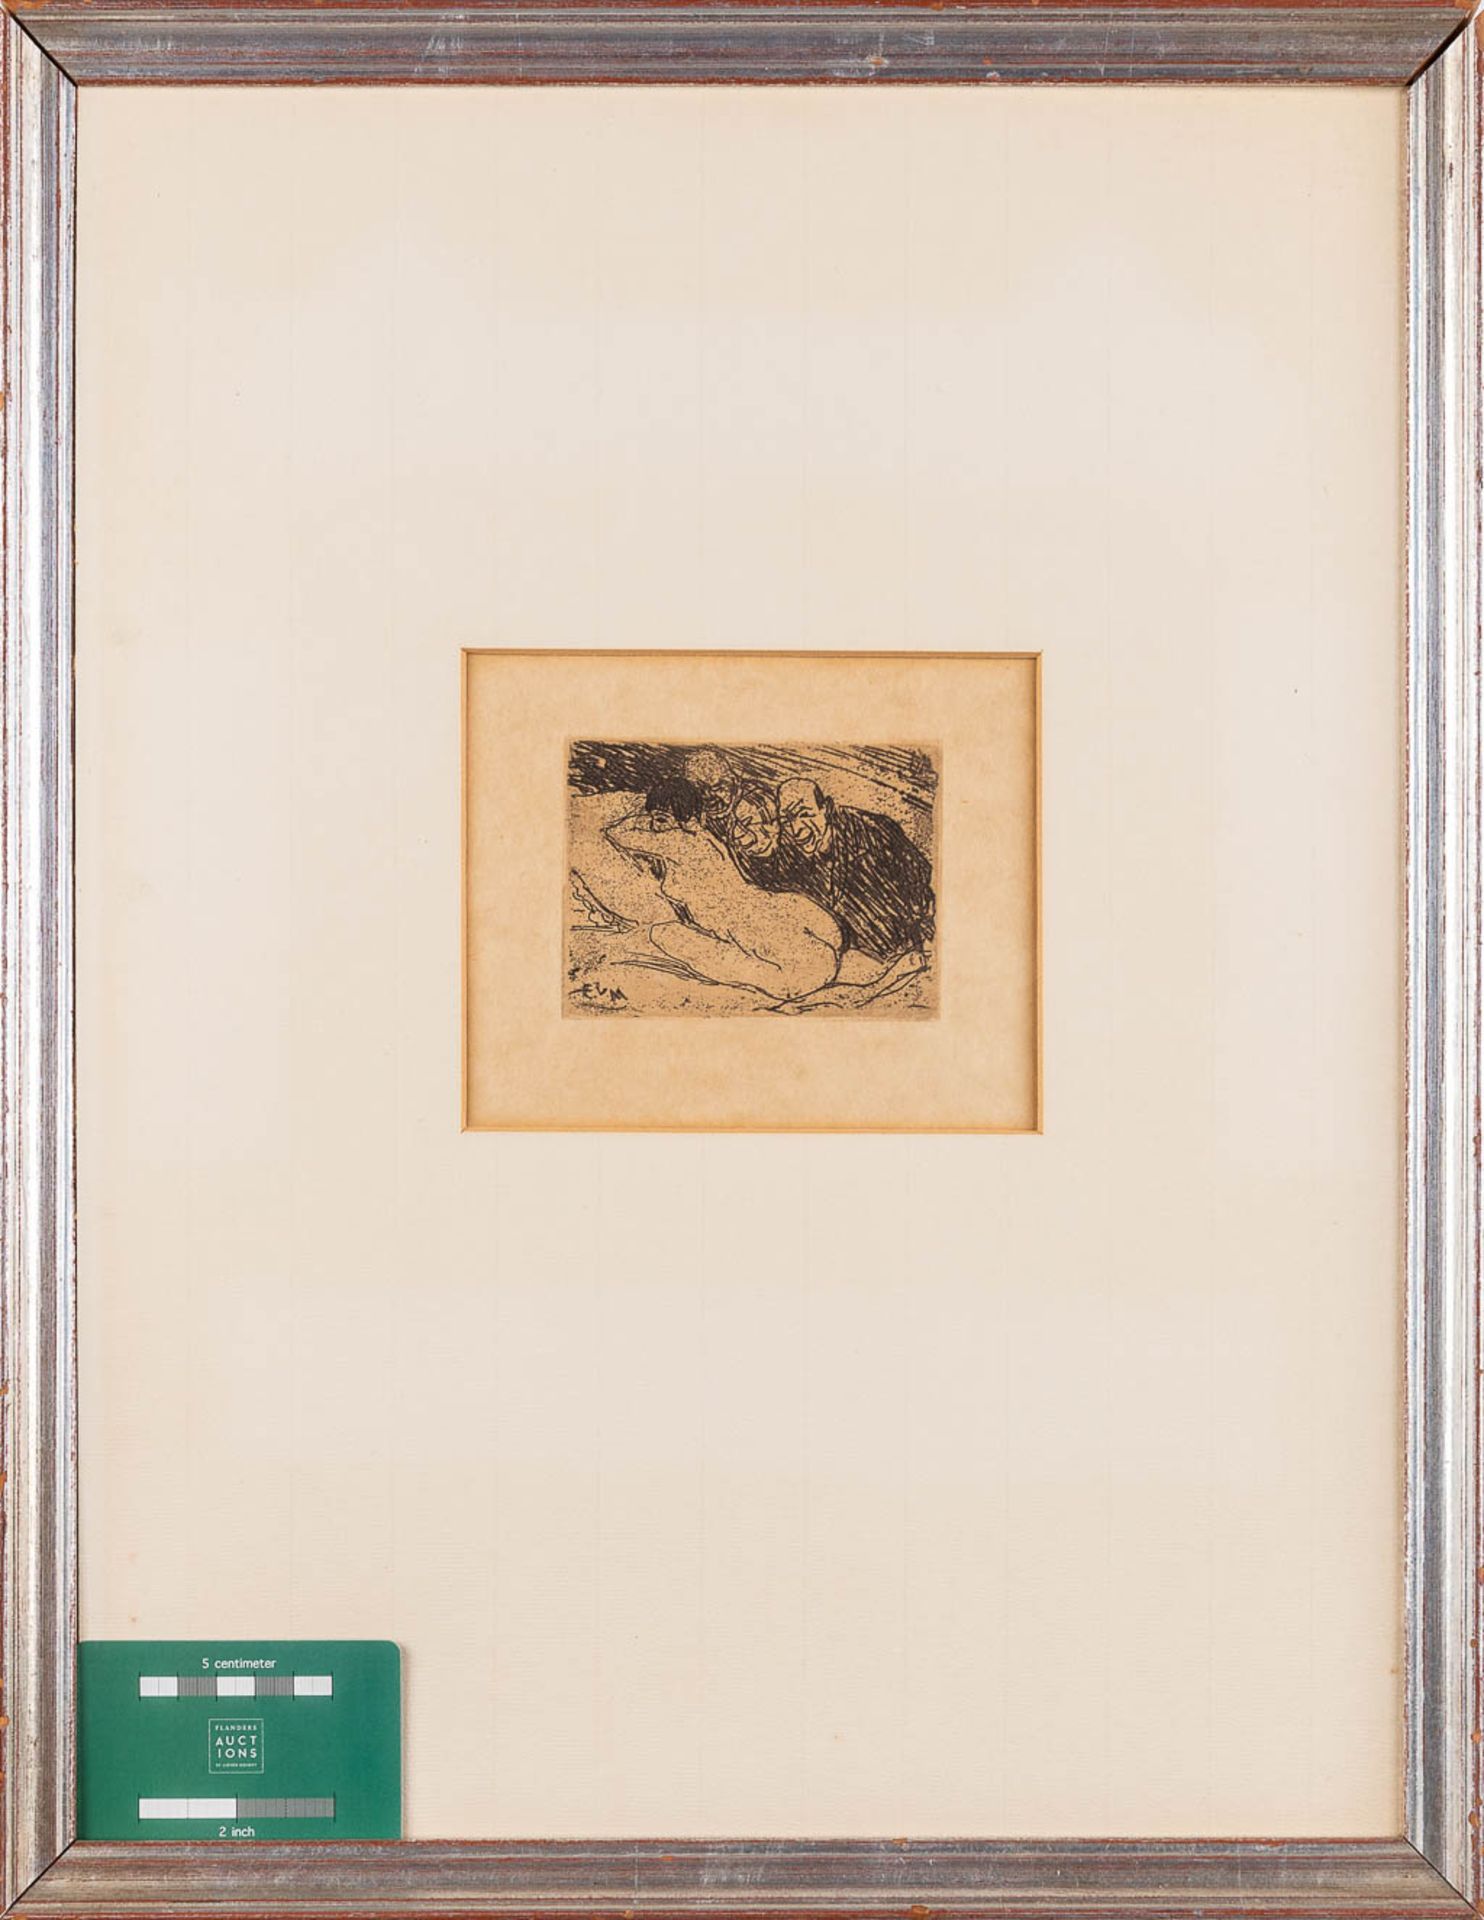 Eugeen VAN MIEGHEM (1875-1930) 'Trois épieurs' an etching, 1922. (W: 9,8 x H: 7,1 cm) - Image 2 of 6